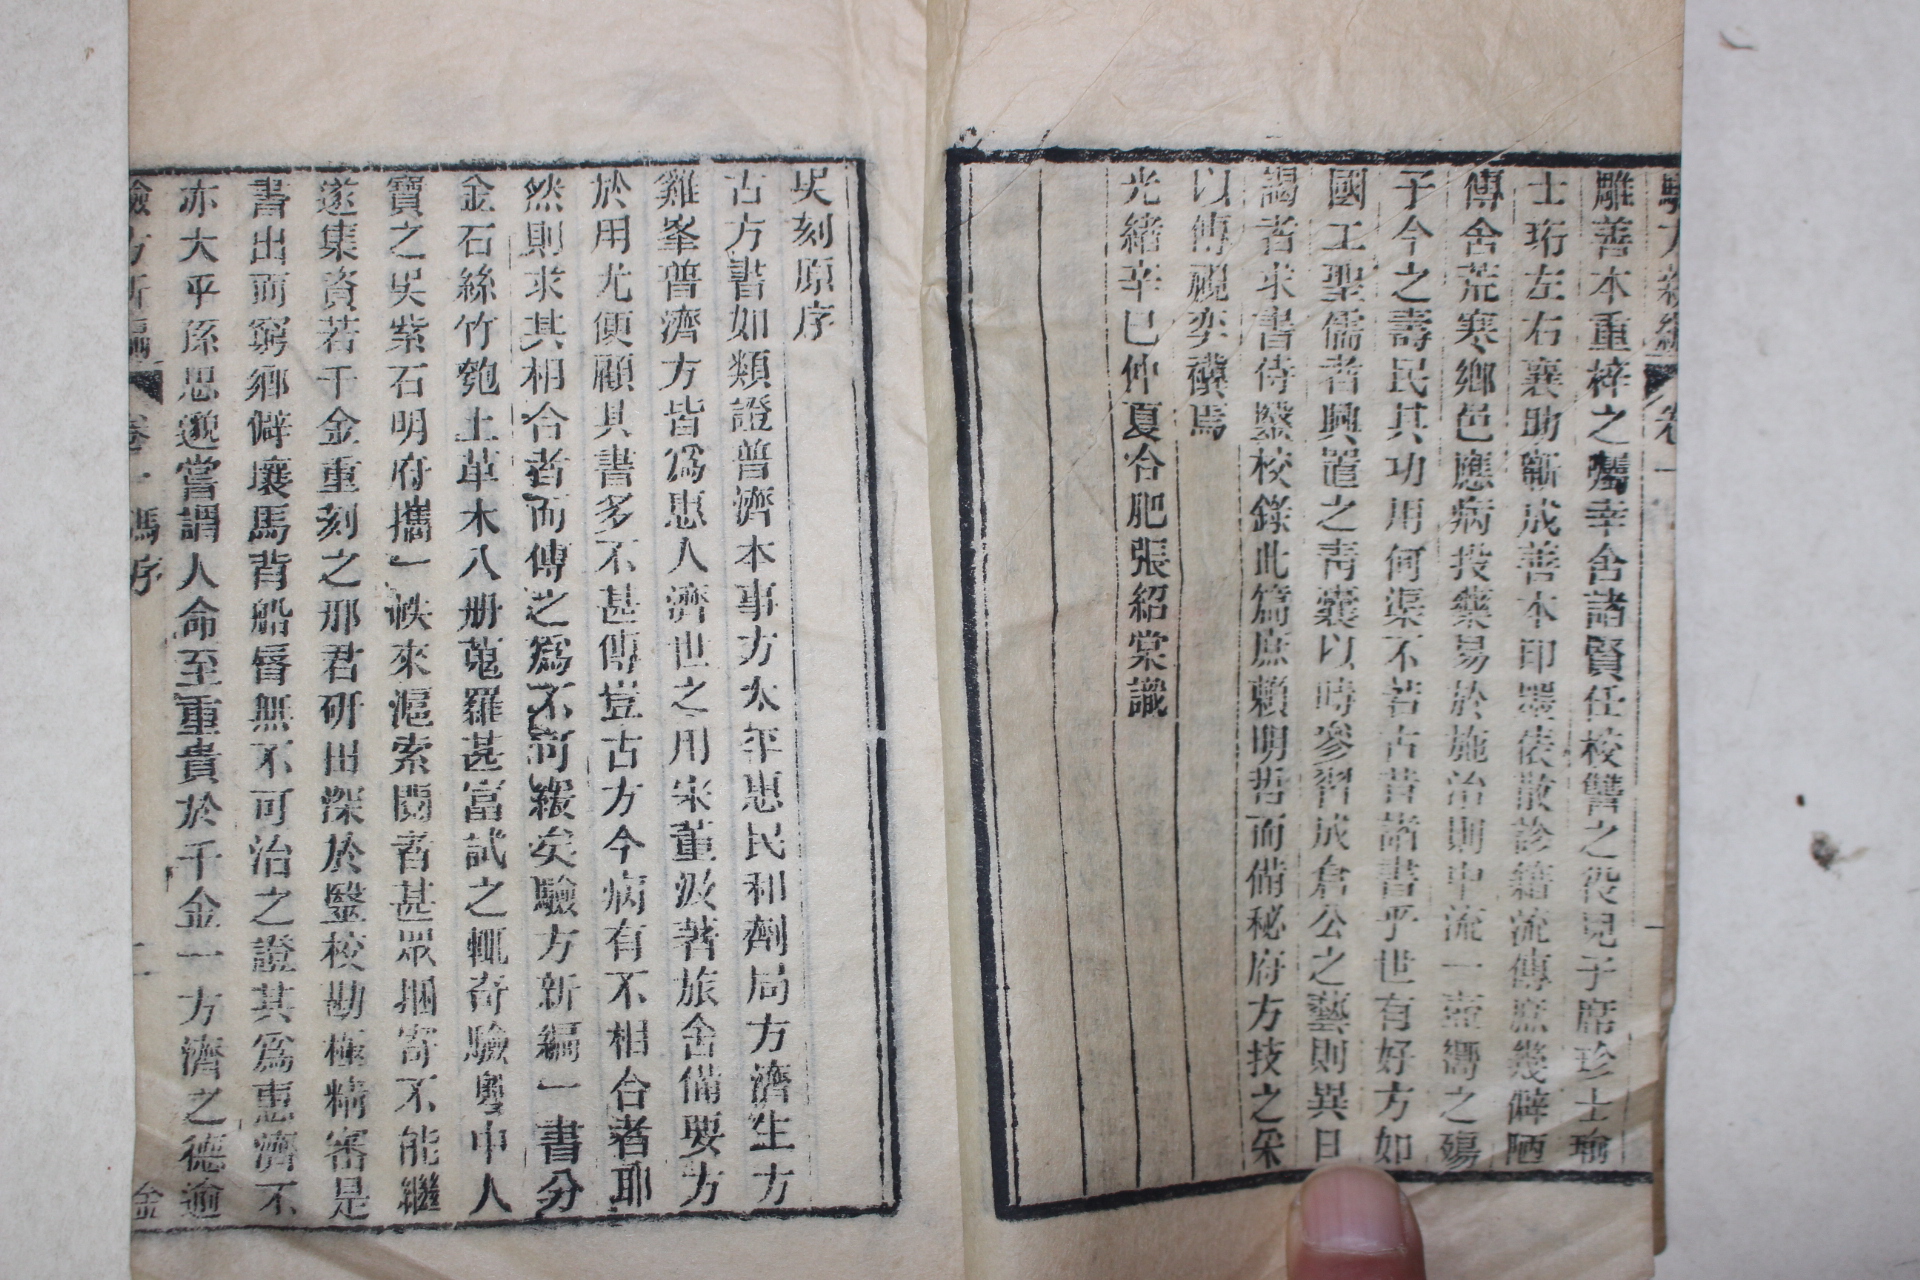 1881년(광서신사년) 중국 목판본 의서 증집 험방신편(驗方新編) 3책